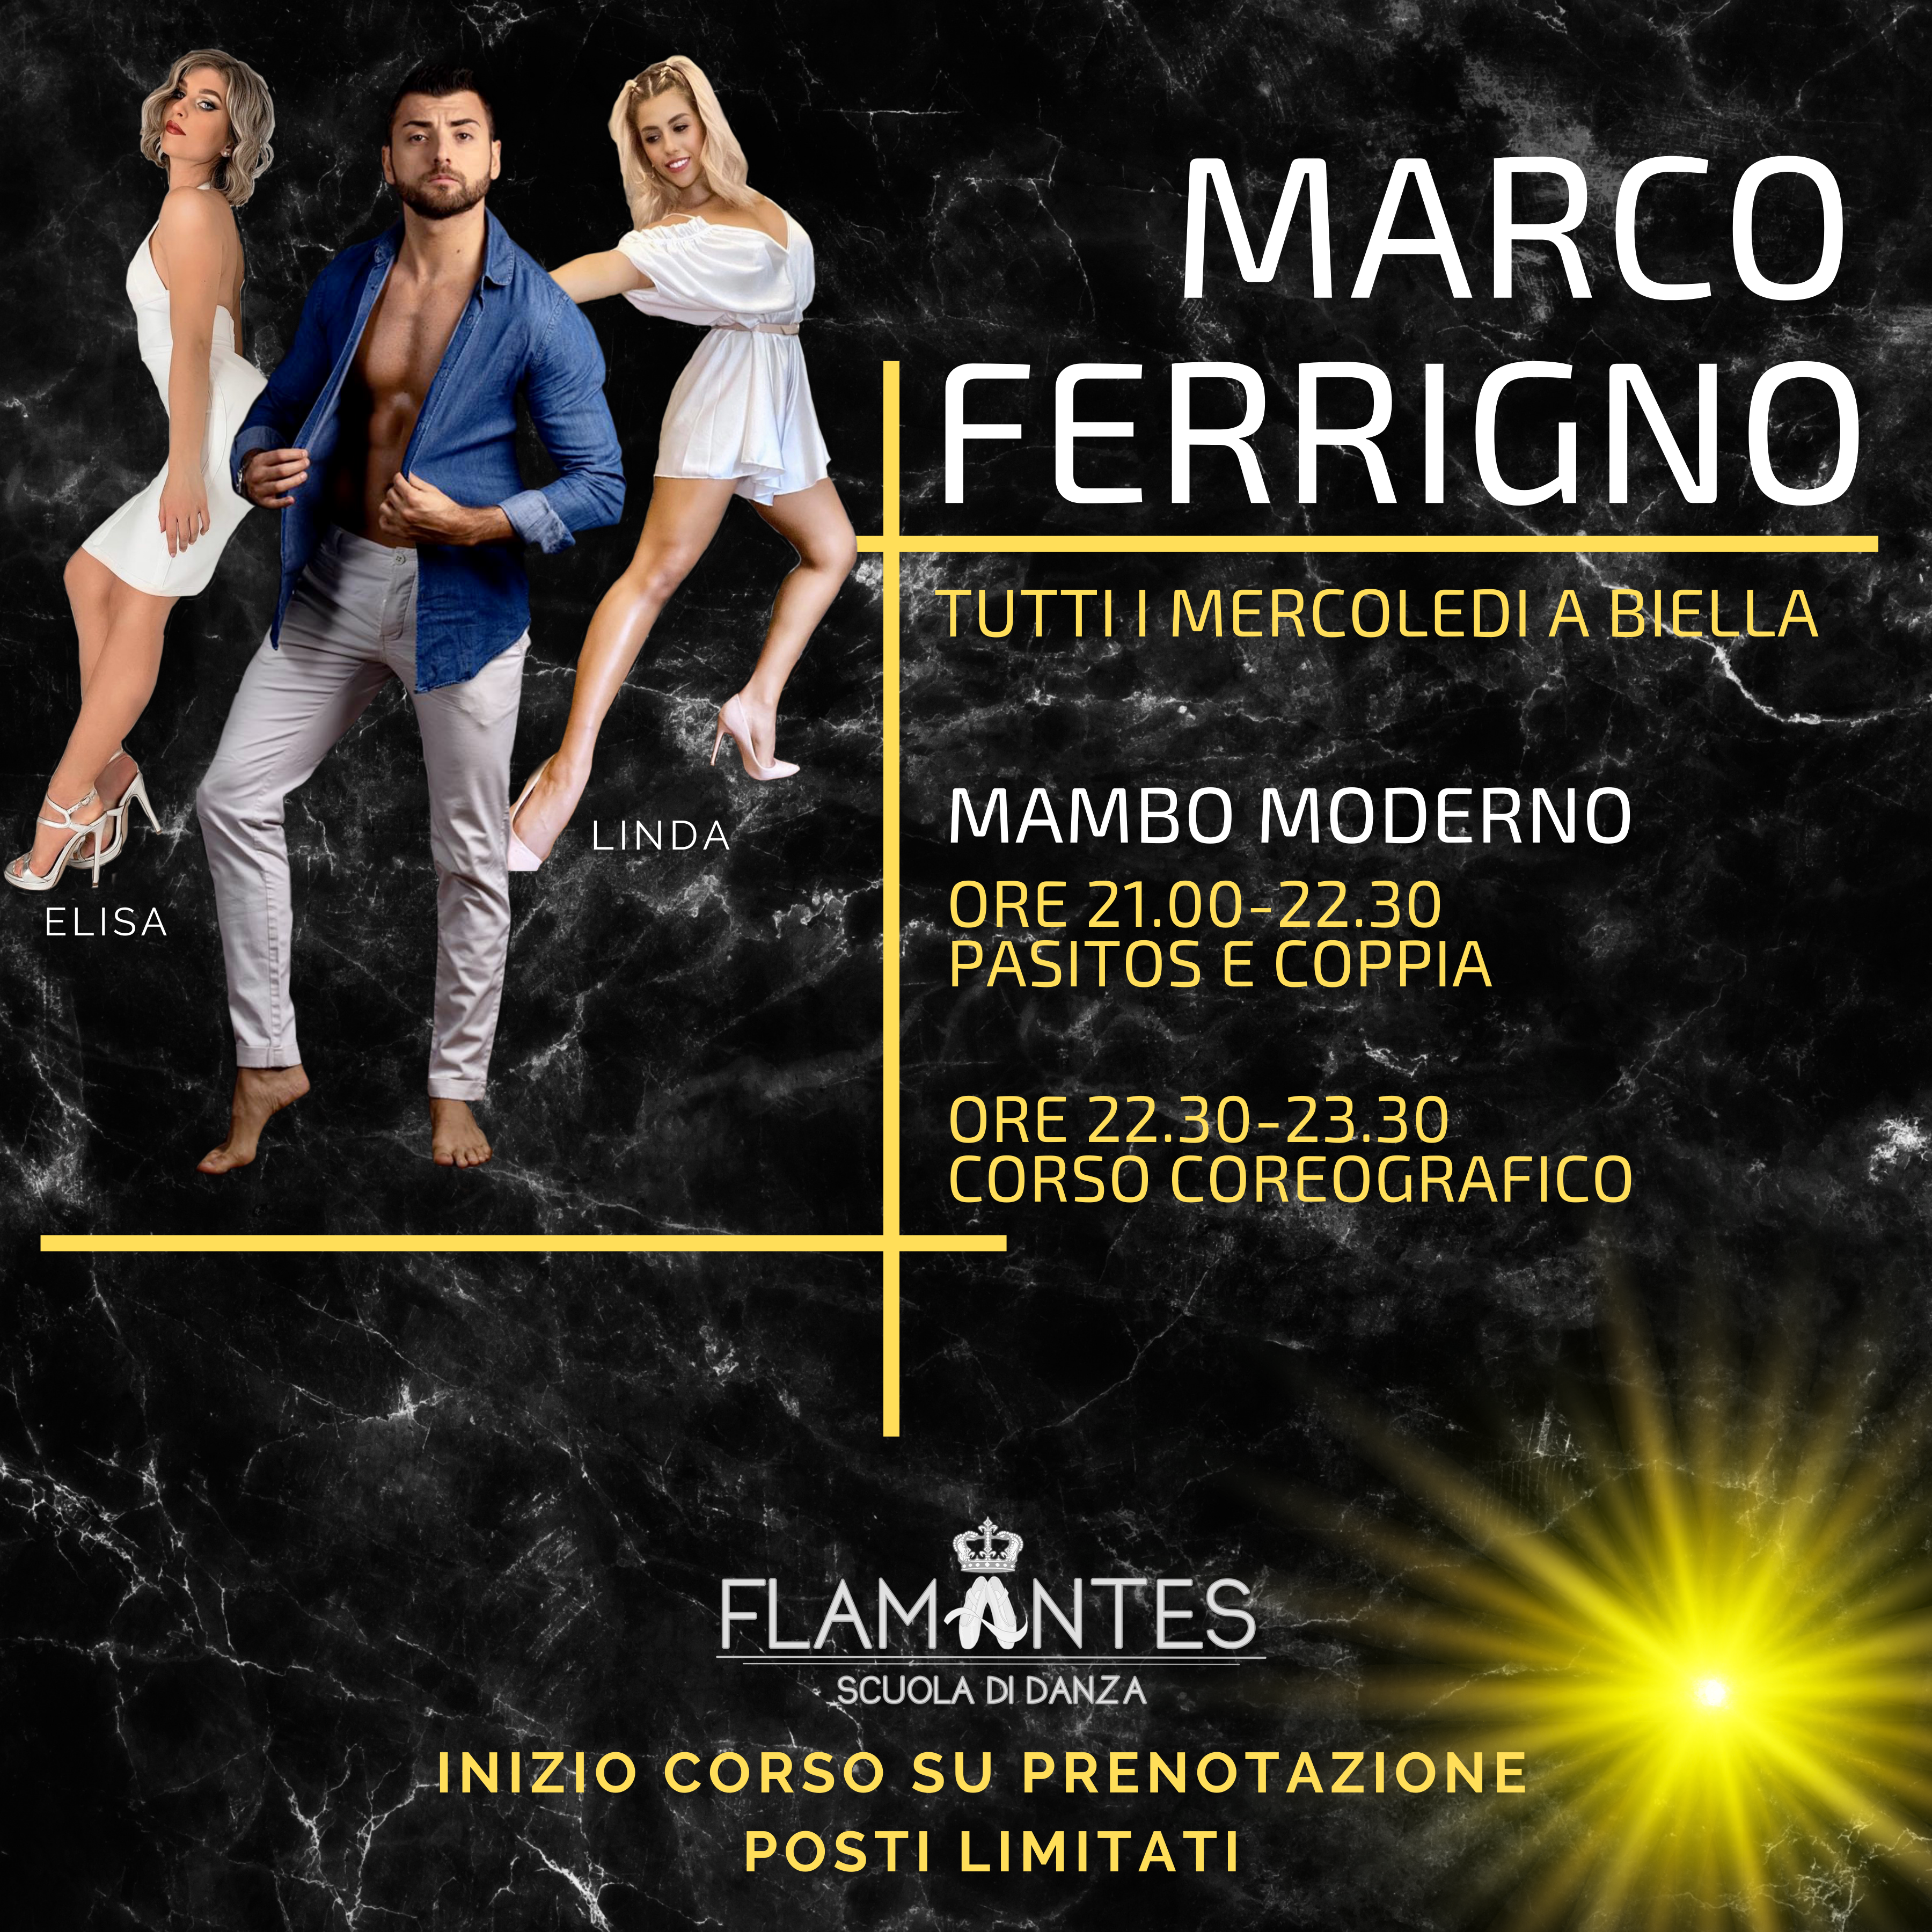 Al momento stai visualizzando Mambo Moderno con Marco Ferrigno